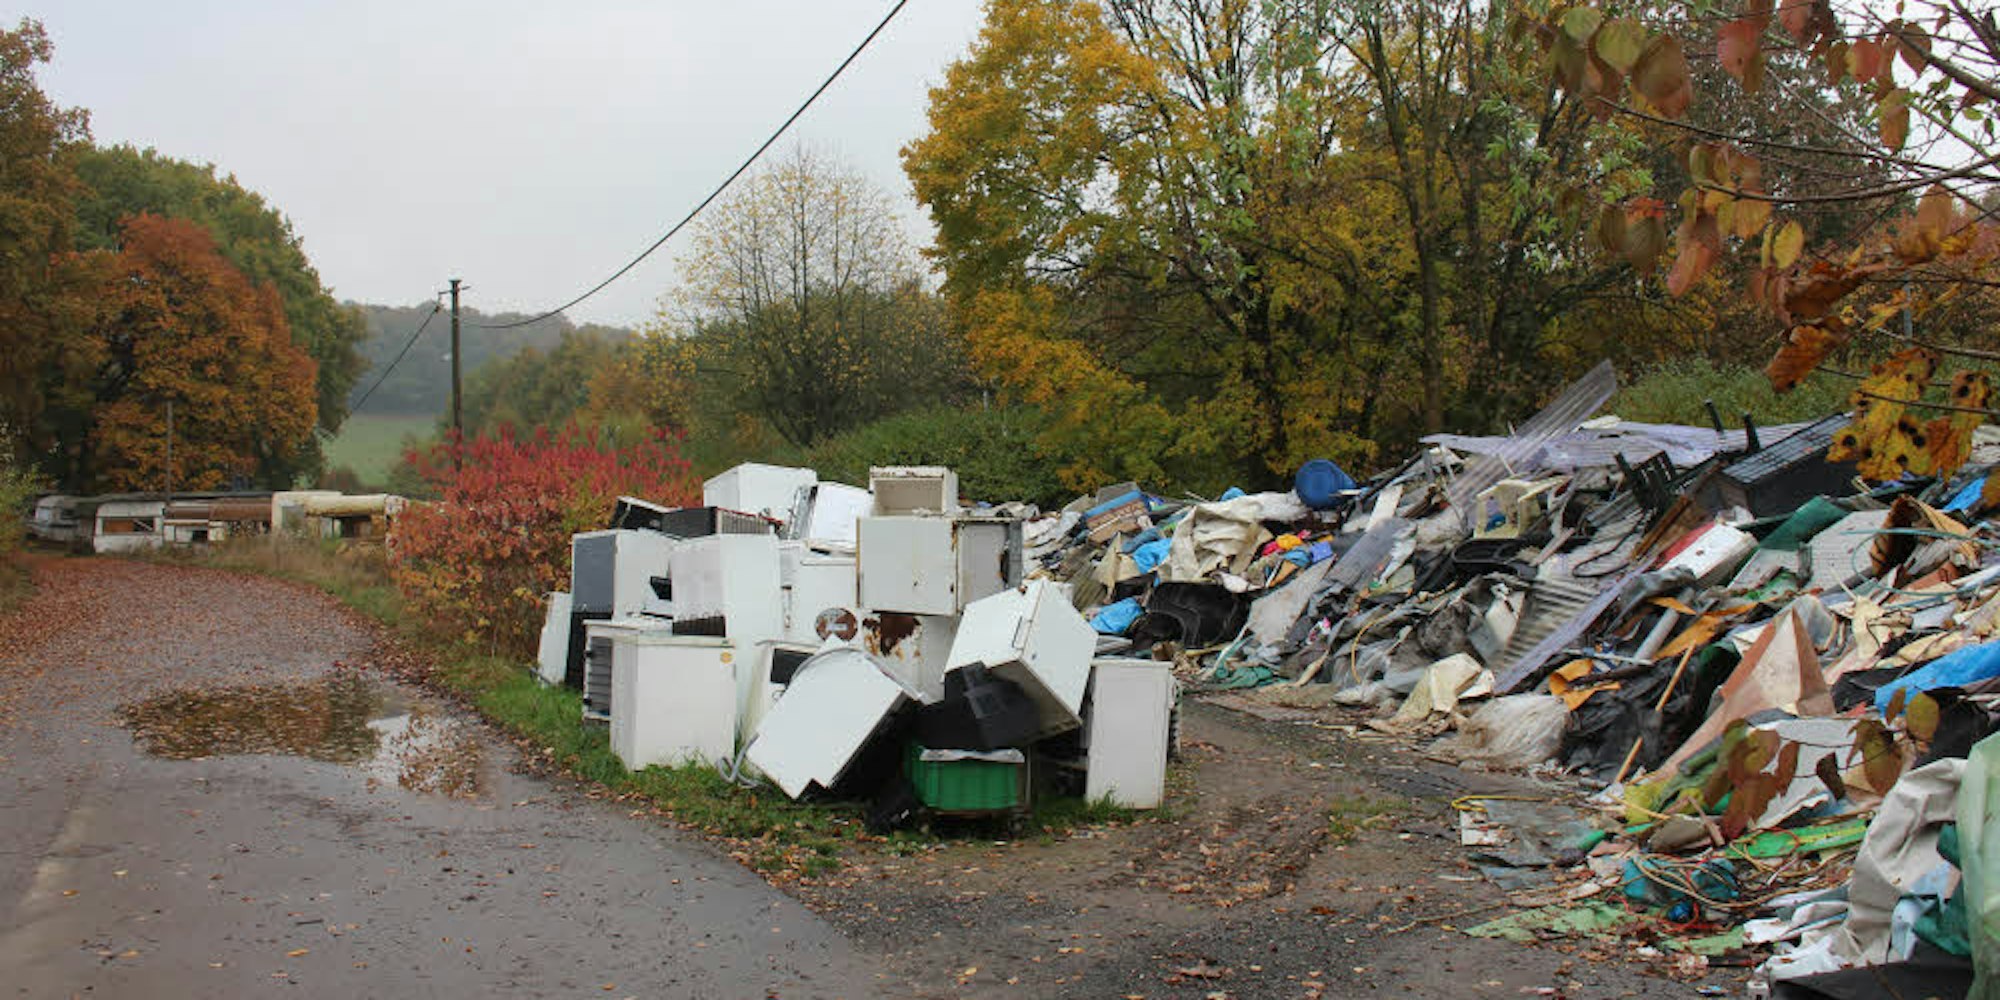 Ausgeschlachtete Campingwagen, alte Kühlschränke und anderer Müll warten derzeit auf der Stadtgrenze von Overath und Lohmar auf ihre umweltgerechte Entsorgung.